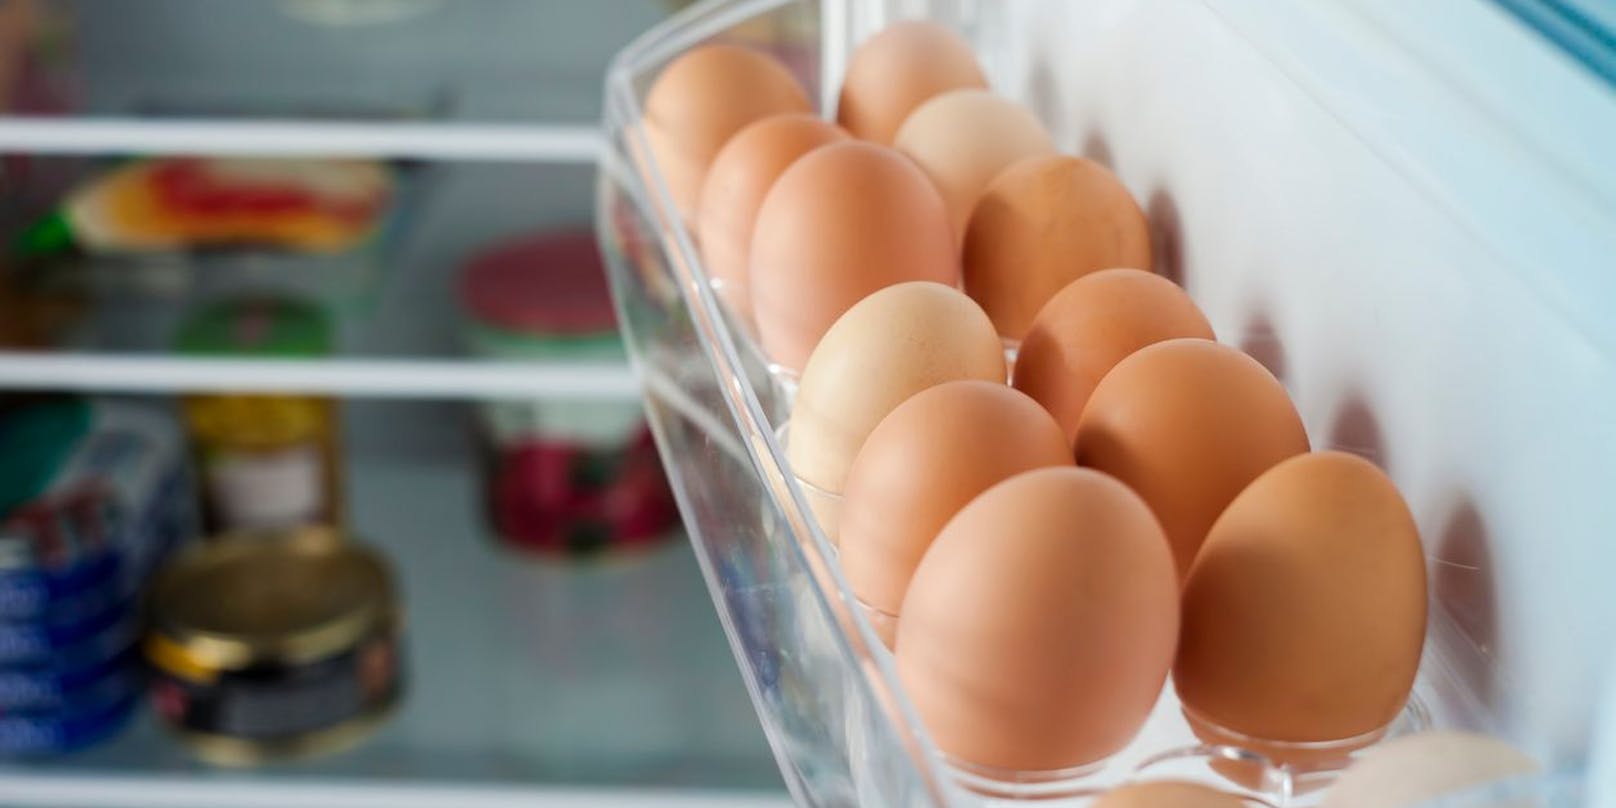 Müssen Eier wirklich im Kühlschrank aufbewahrt werden?